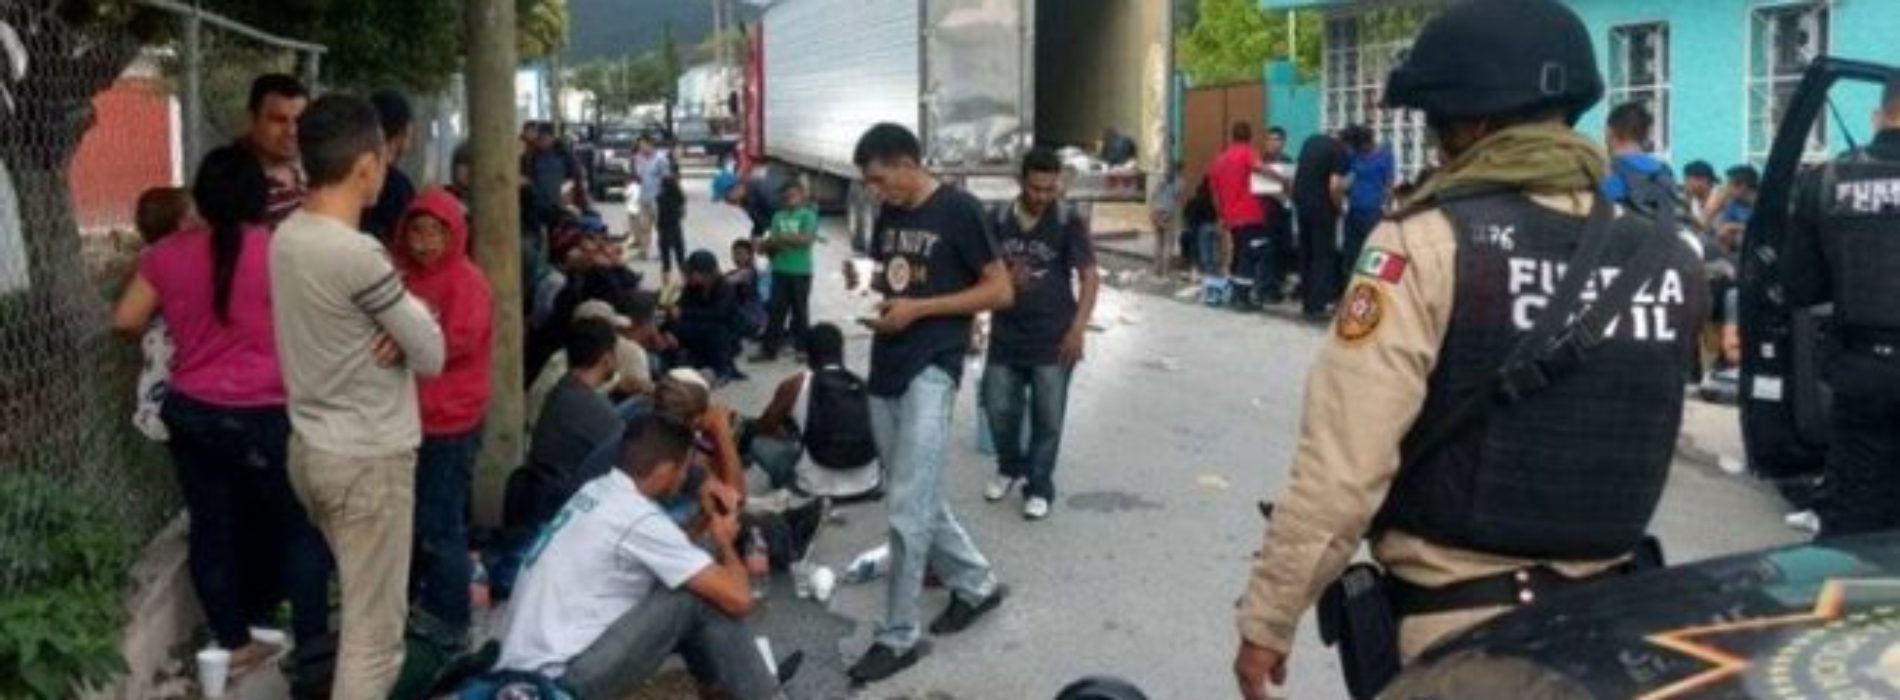 Rescatan a 42 migrantes guatemaltecos hacinados en camión,
en Oaxaca